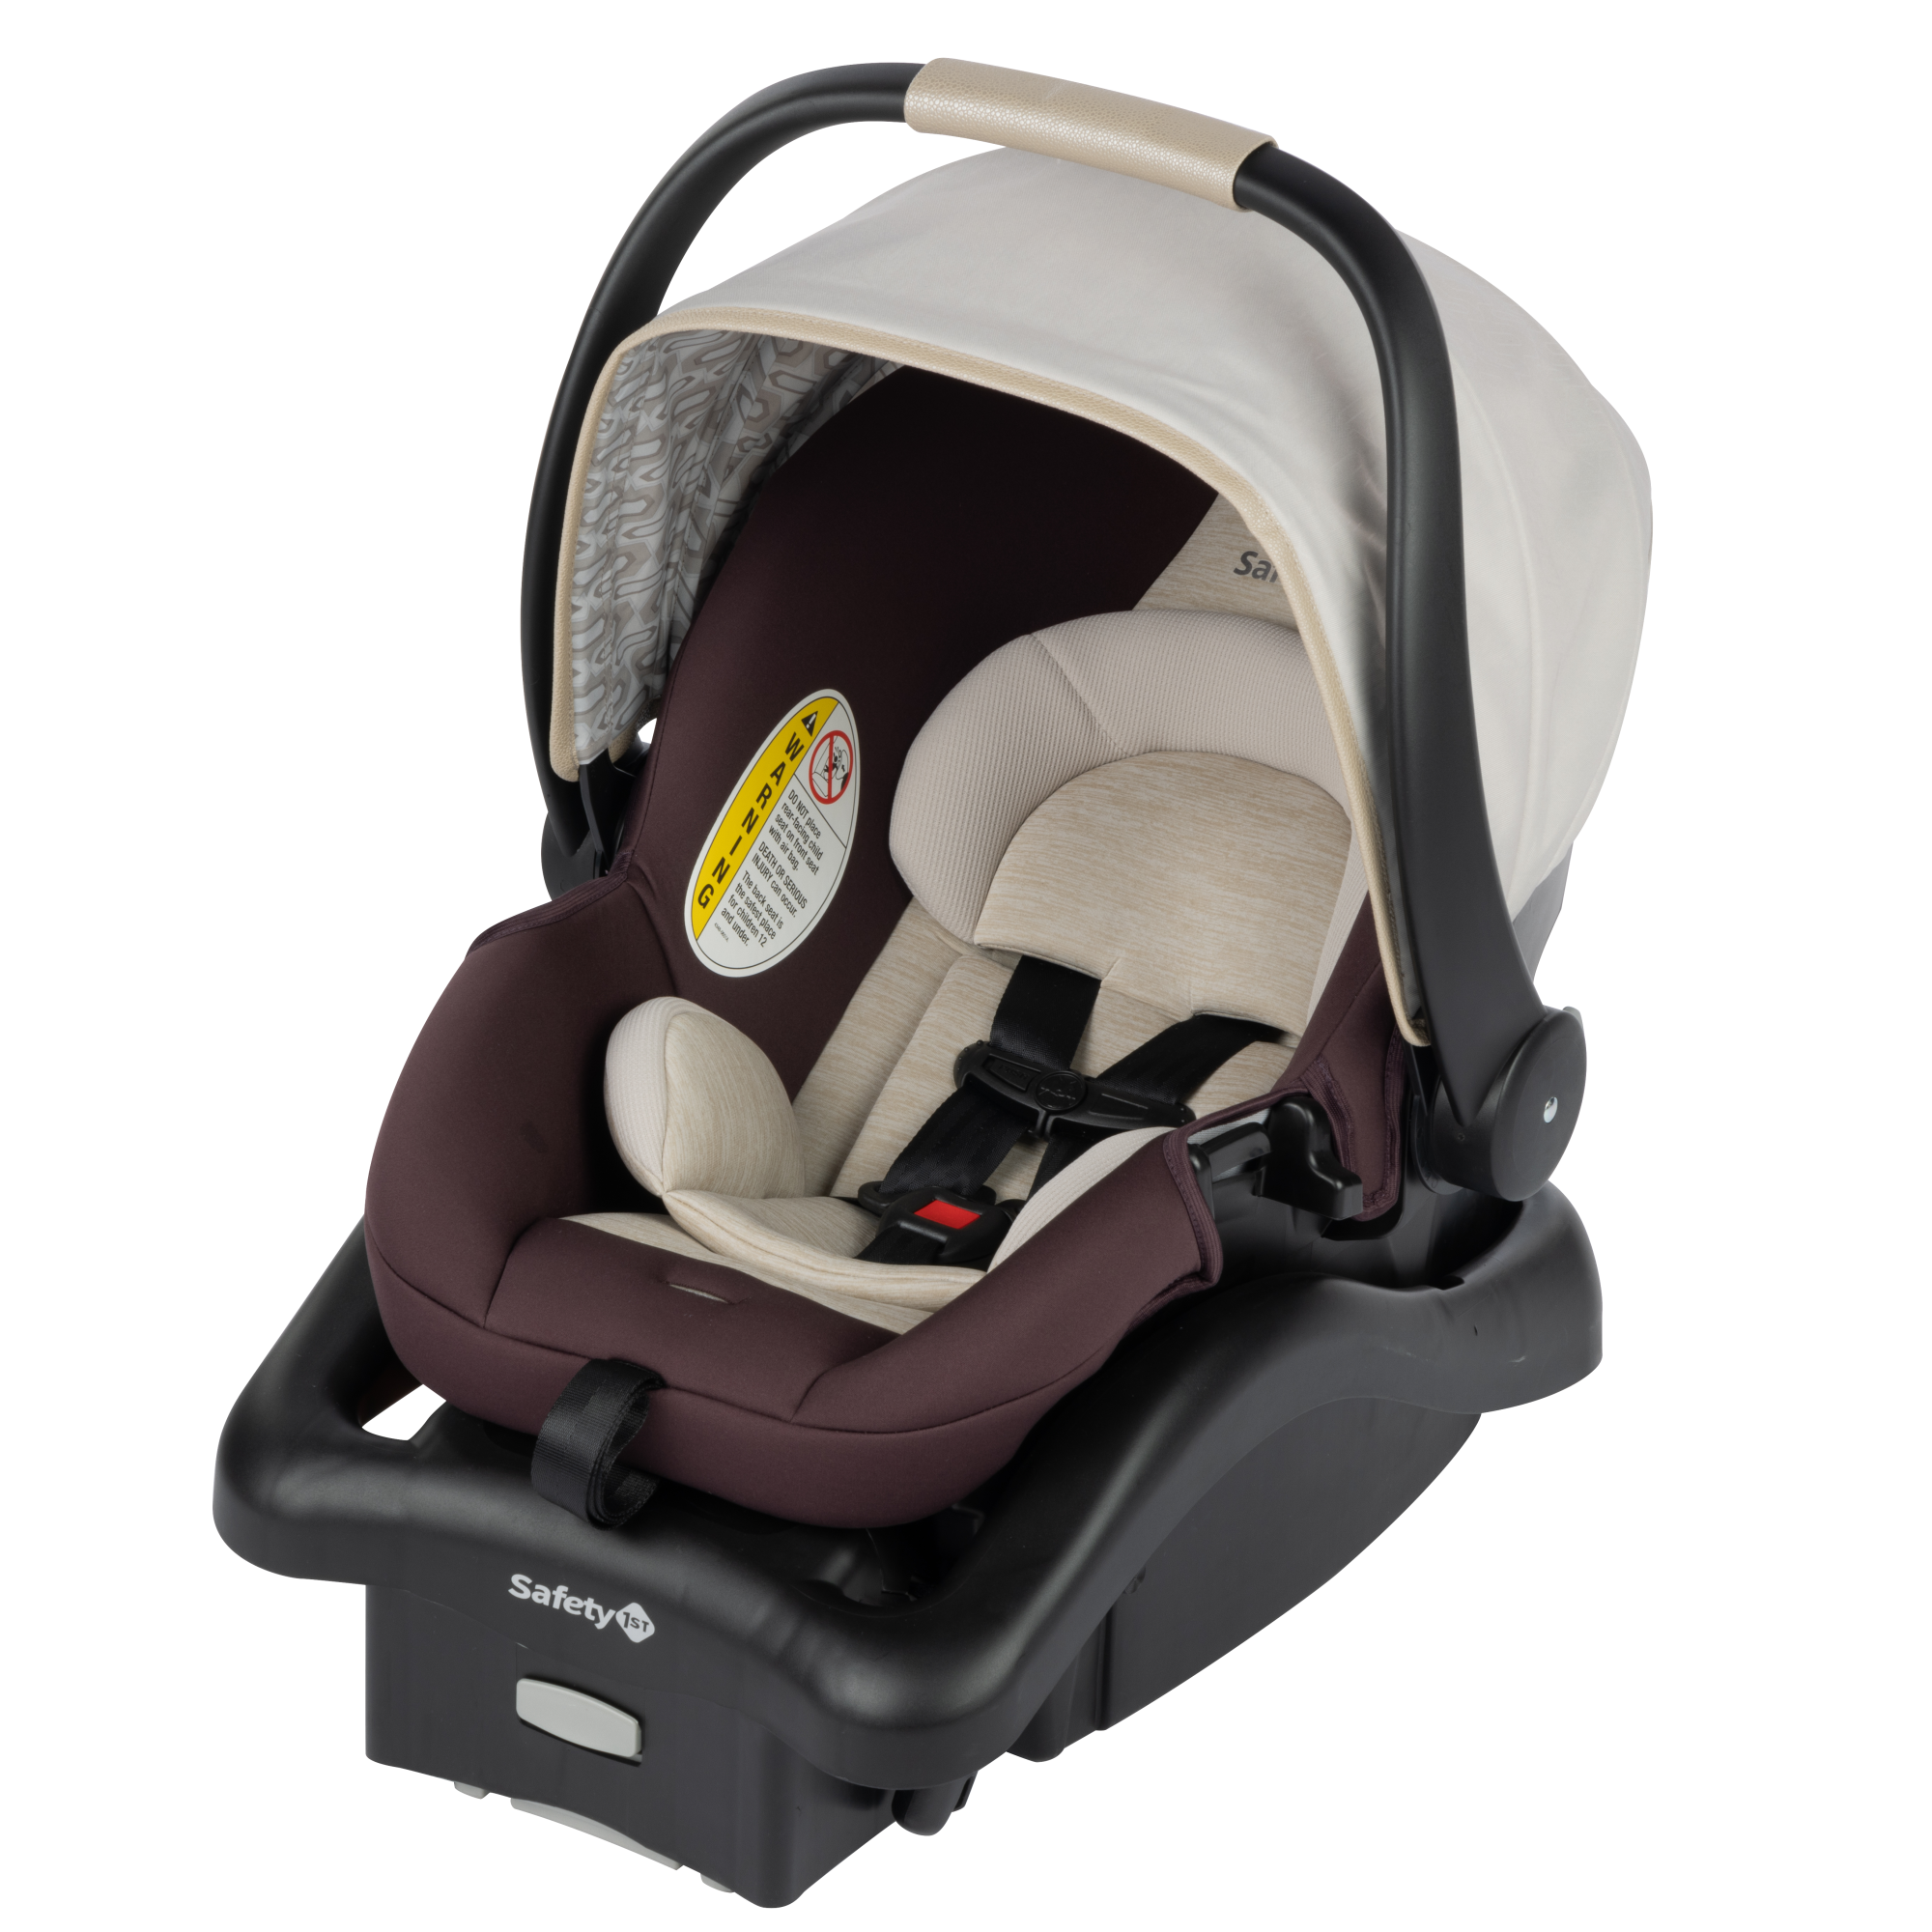 onBoard™35 SecureTech™ Infant Car Seat - Dunes Edge